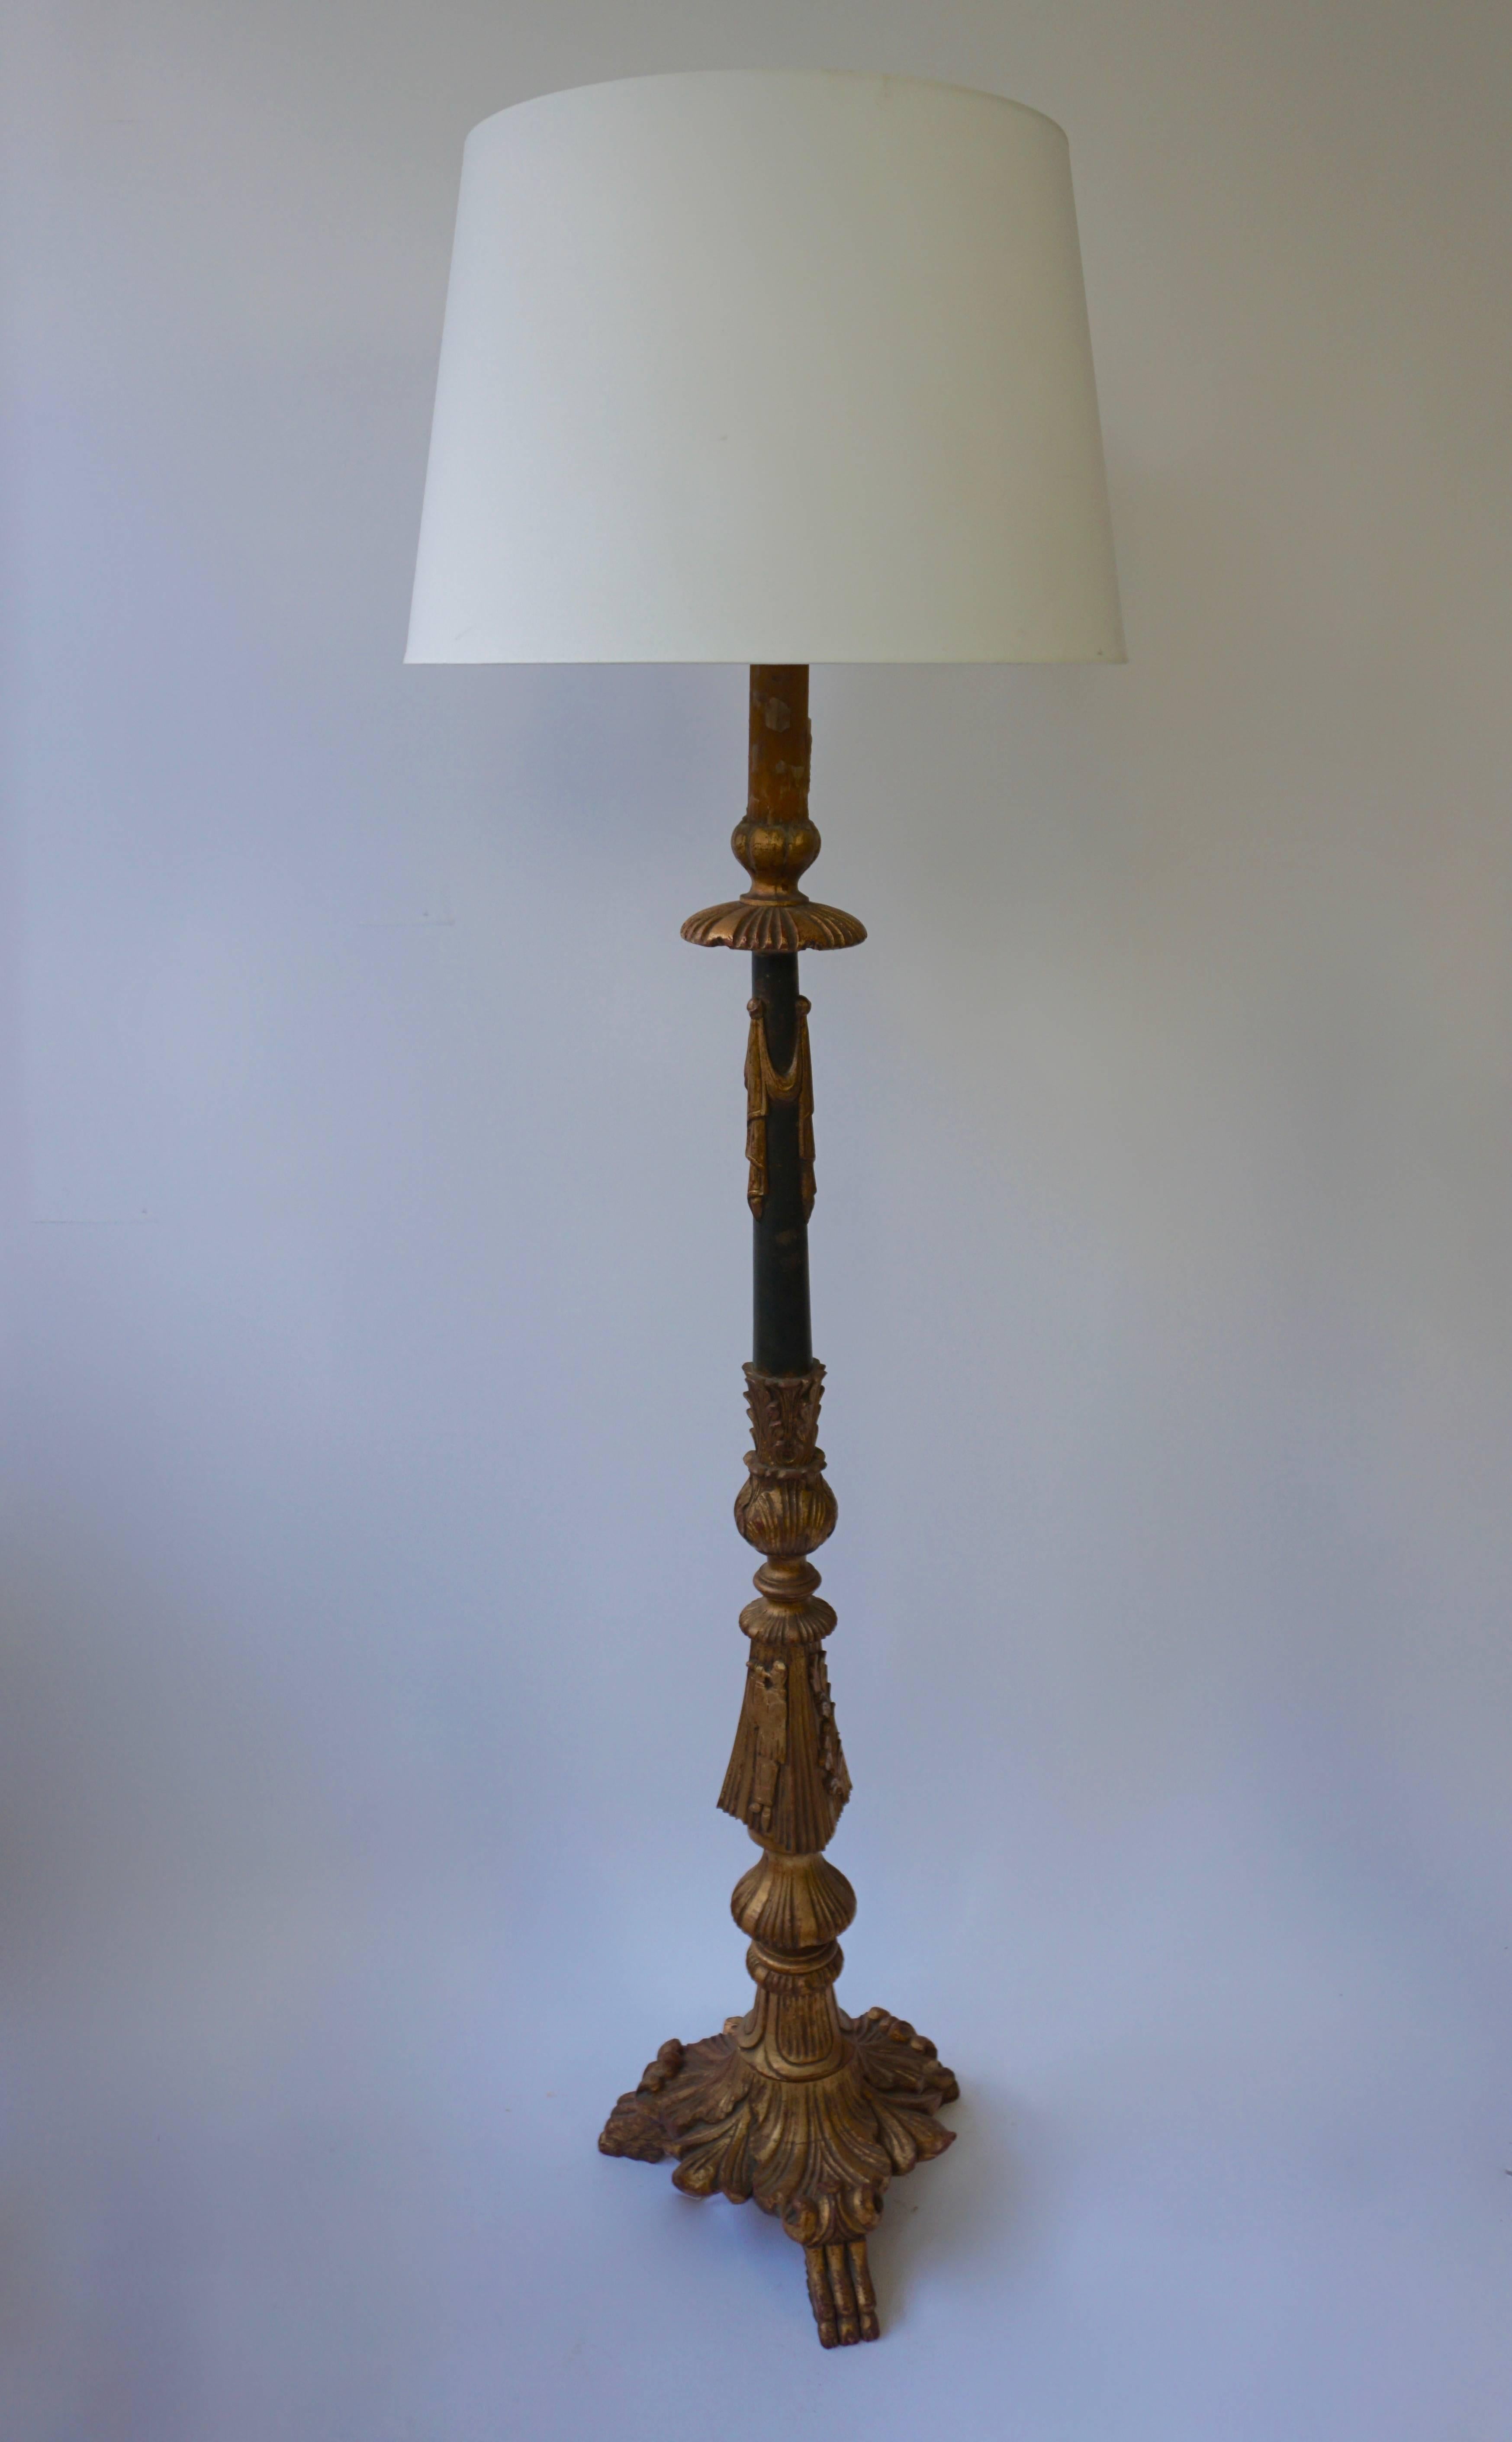 Pied de lampe en bois sculpté, doré et peint en forme de candélabre, de style néoclassique, milieu du 20e siècle.
Hauteur sans abat-jour : 168 cm.
Diamètre : 38 cm.
Hauteur avec abat-jour : 177 cm.
Diamètre de l'abat-jour : 54 cm.